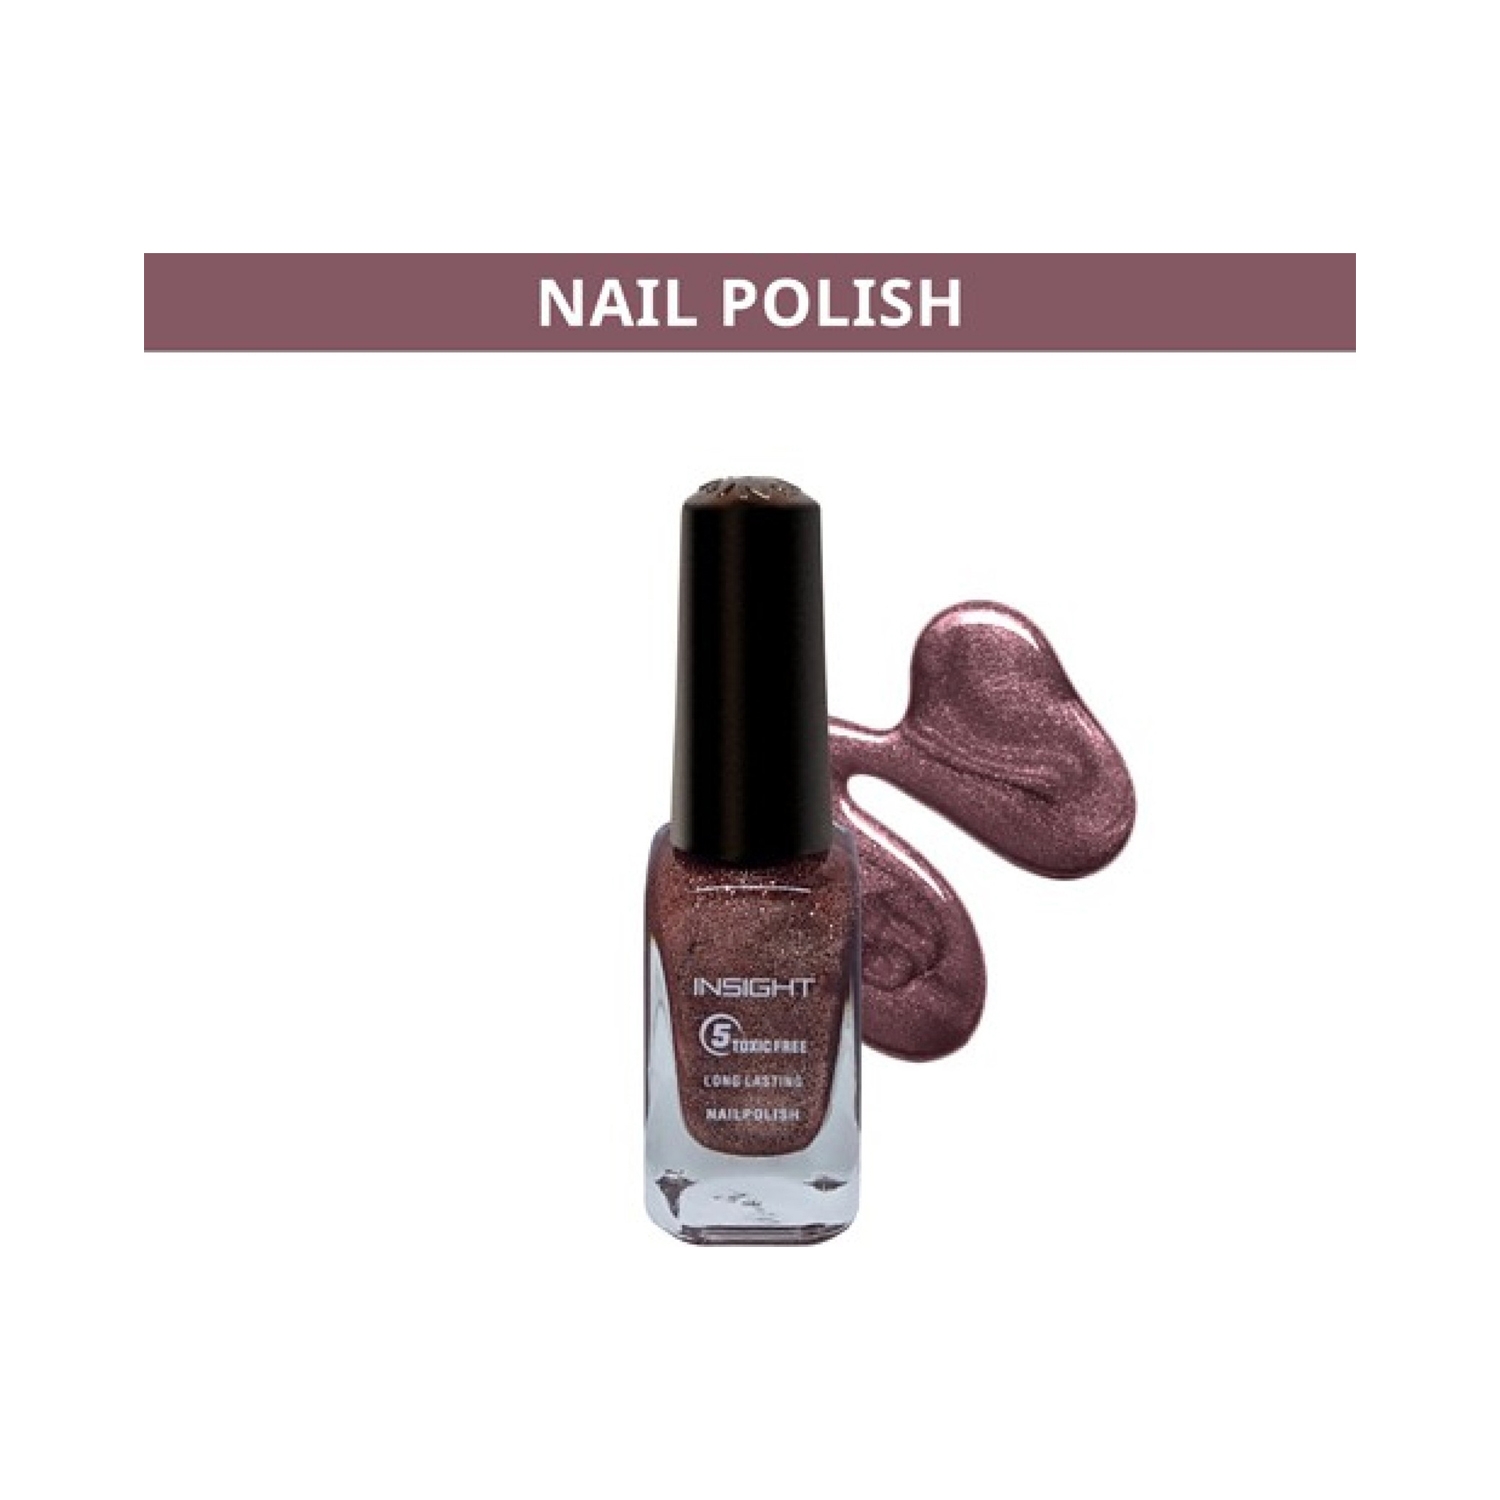 Nail Polish | Nail polish, Nails, Nails on fleek